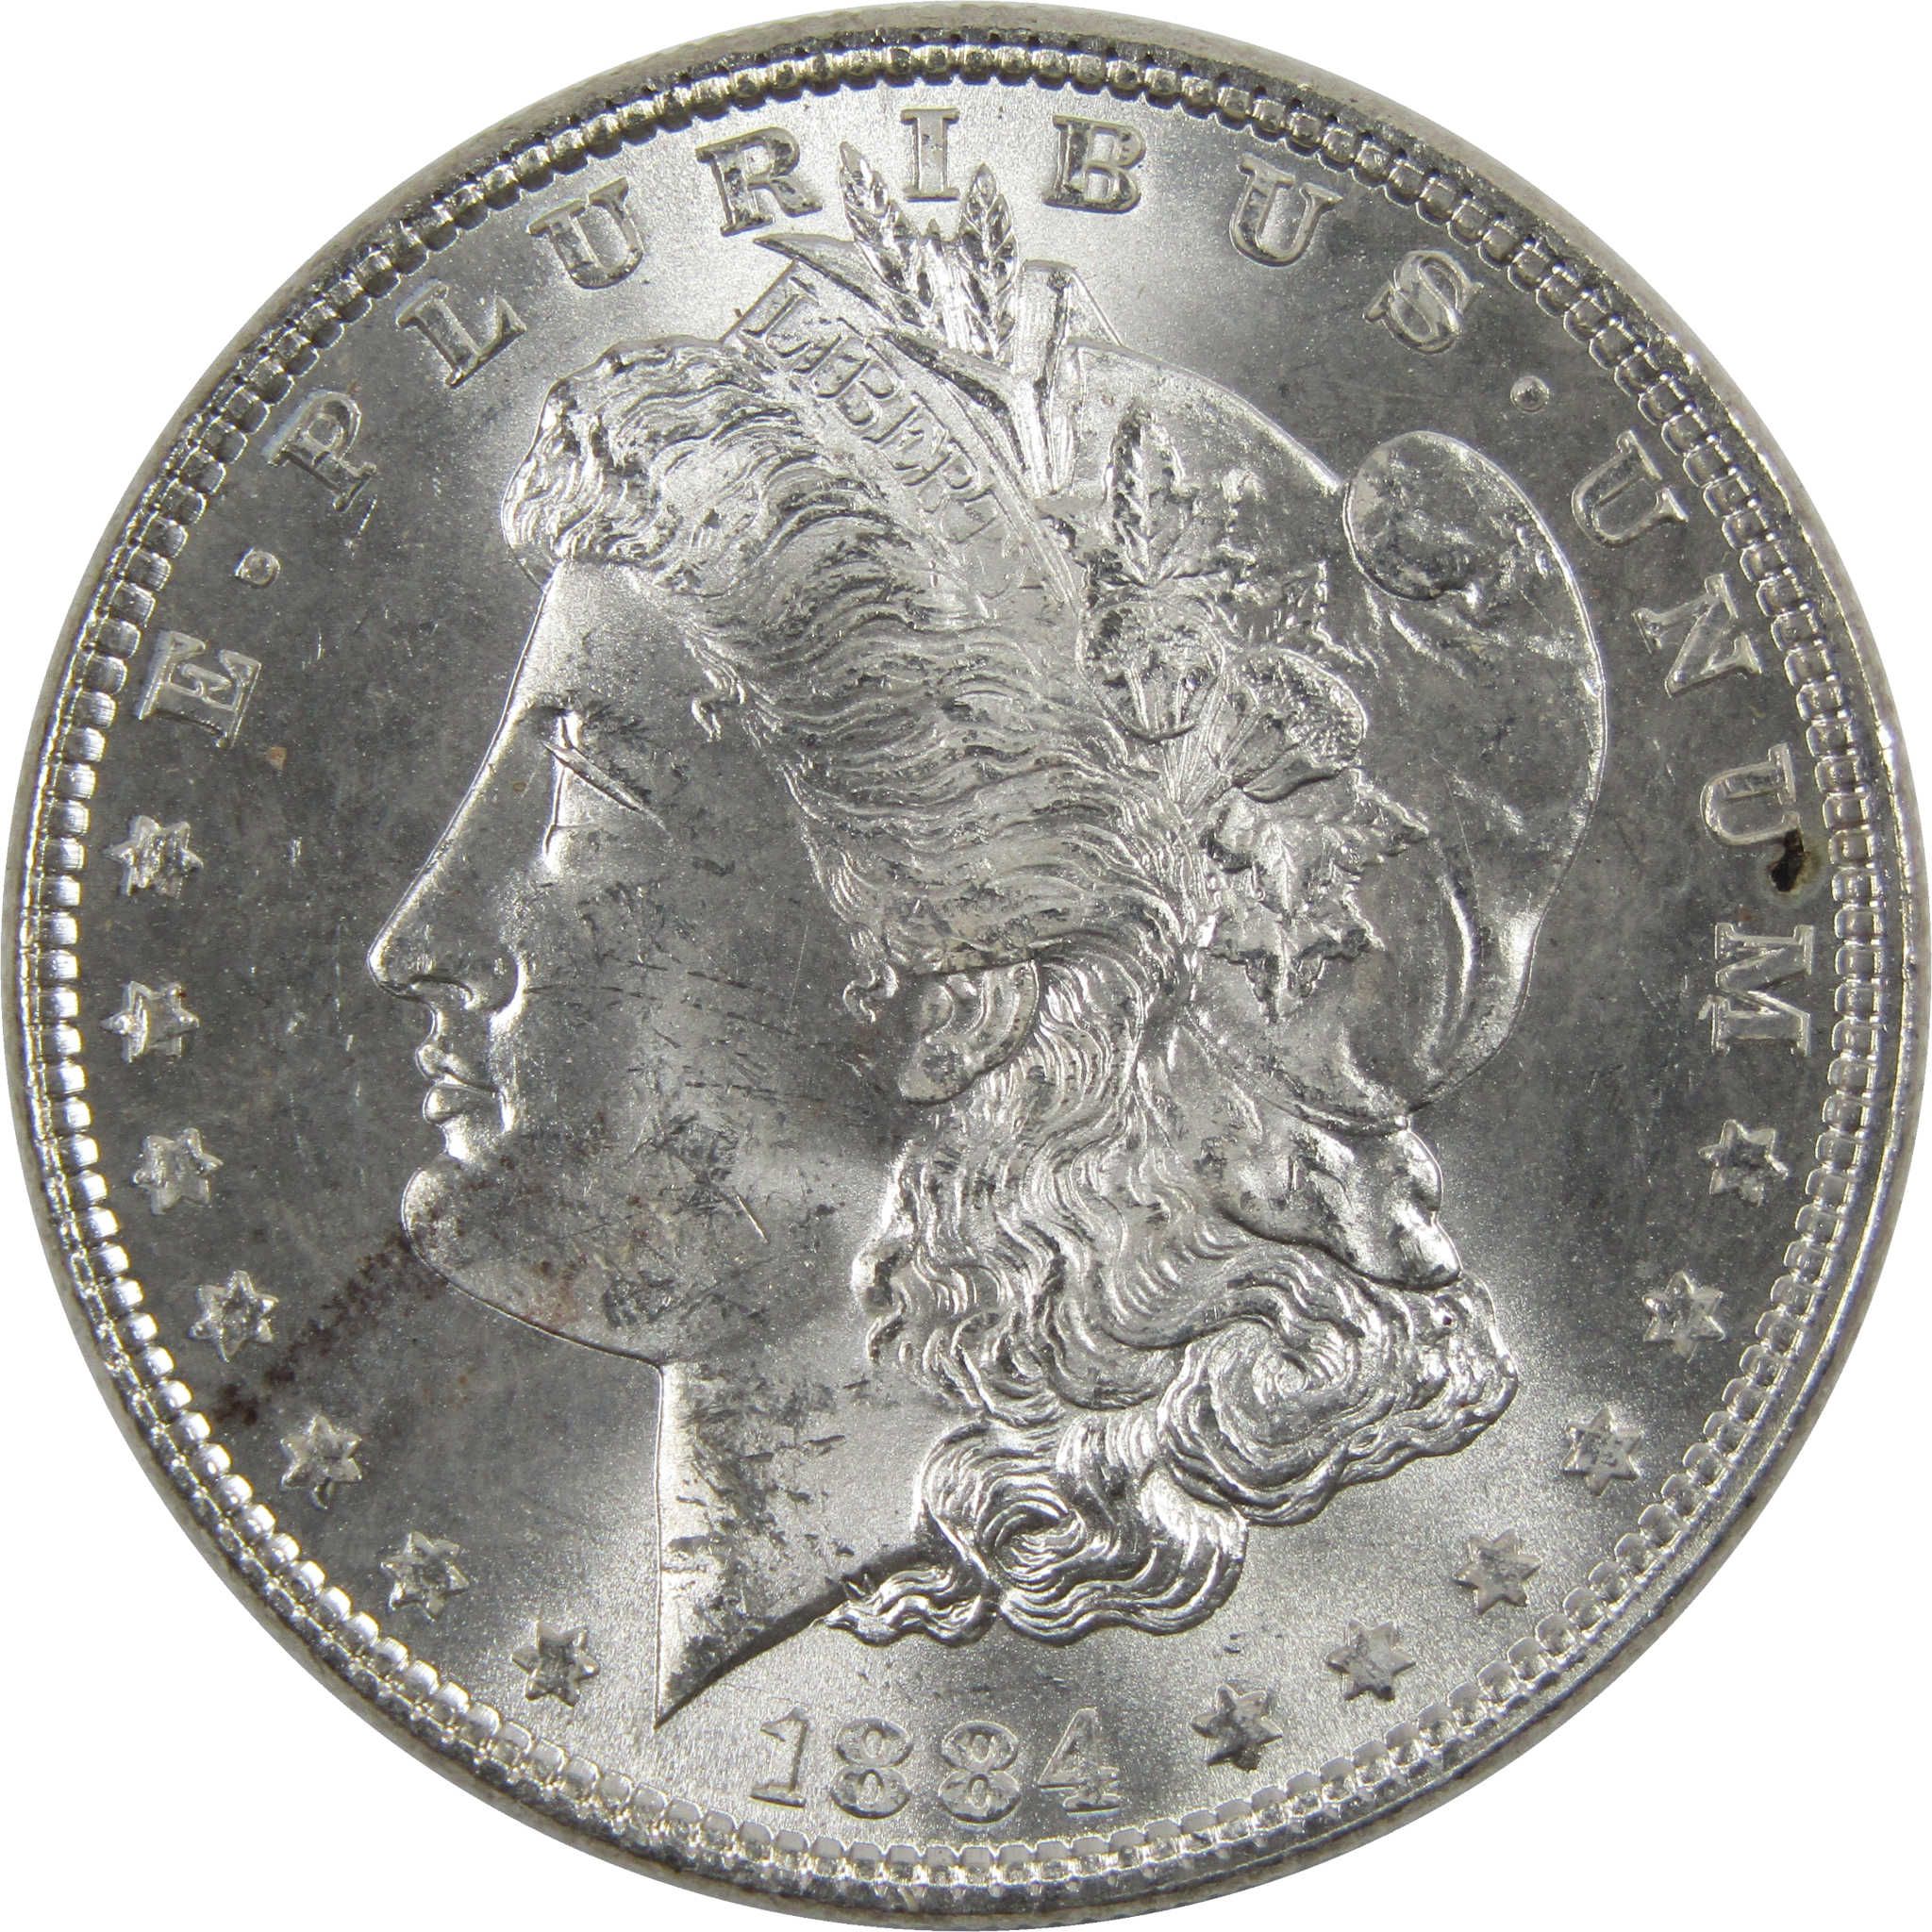 1884 Morgan Dollar BU Uncirculated 90% Silver $1 Coin SKU:I6014 - Morgan coin - Morgan silver dollar - Morgan silver dollar for sale - Profile Coins &amp; Collectibles